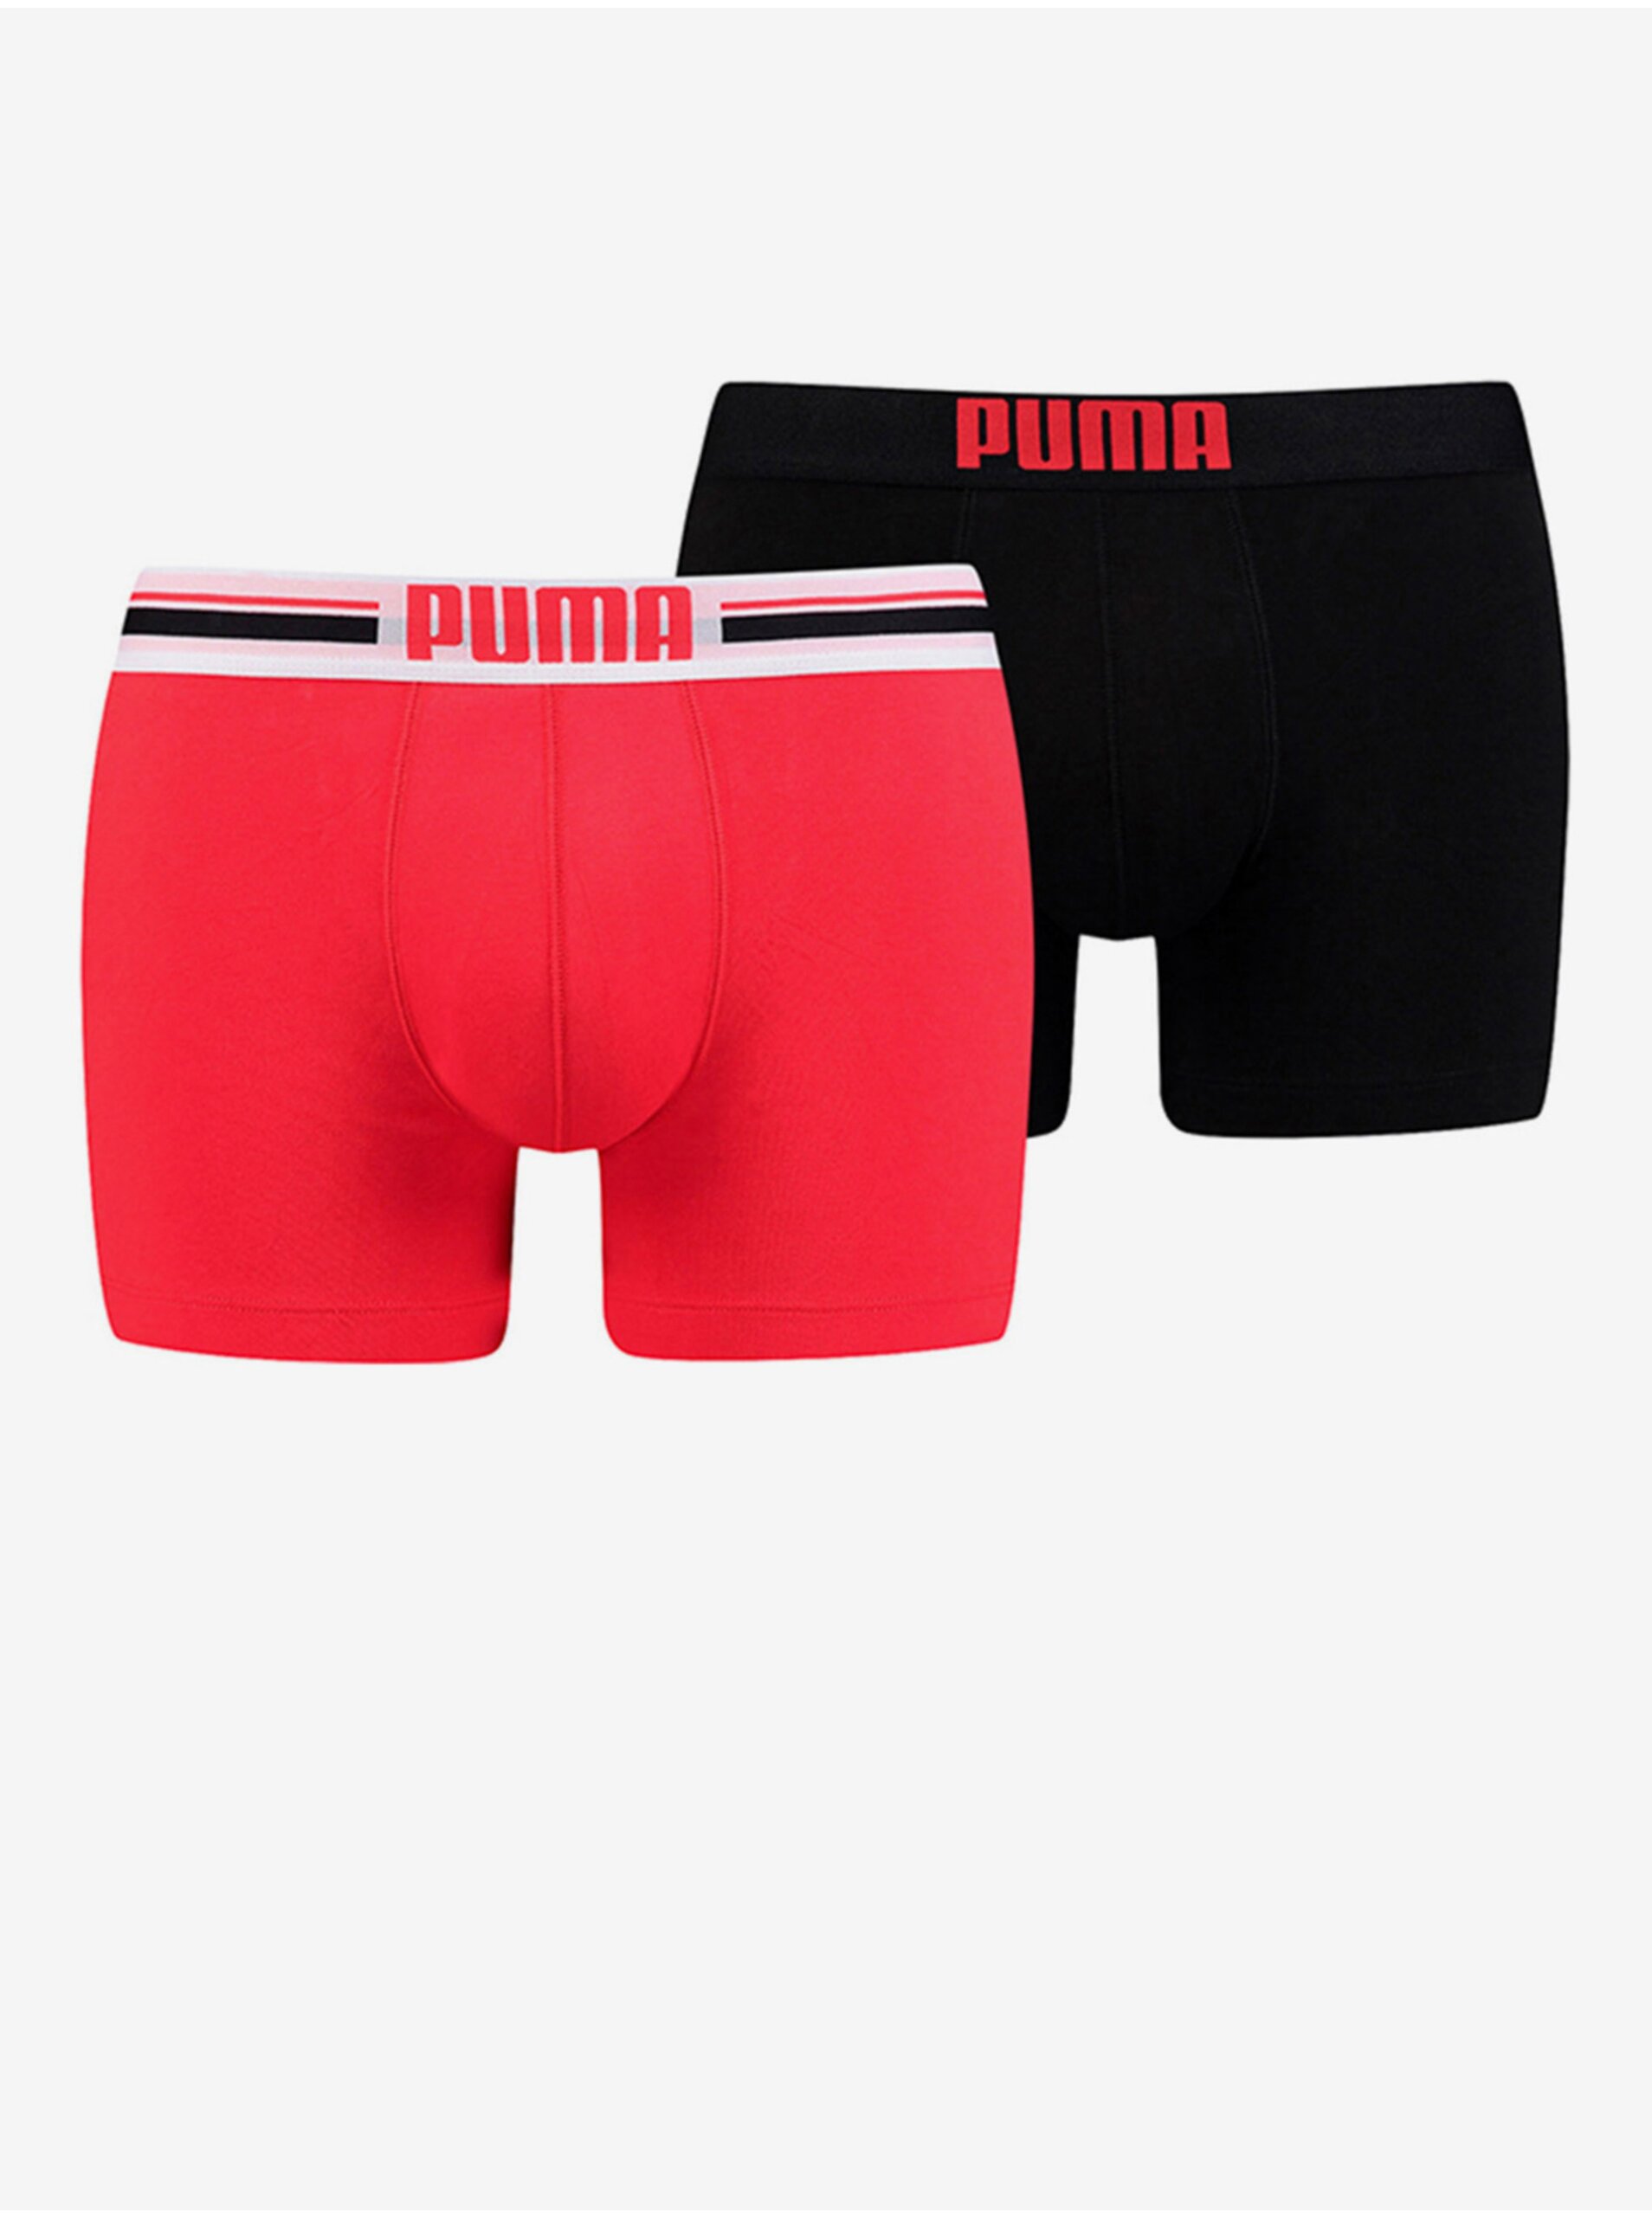 E-shop Sada dvou pánských boxerek v červené a černé barvě Puma